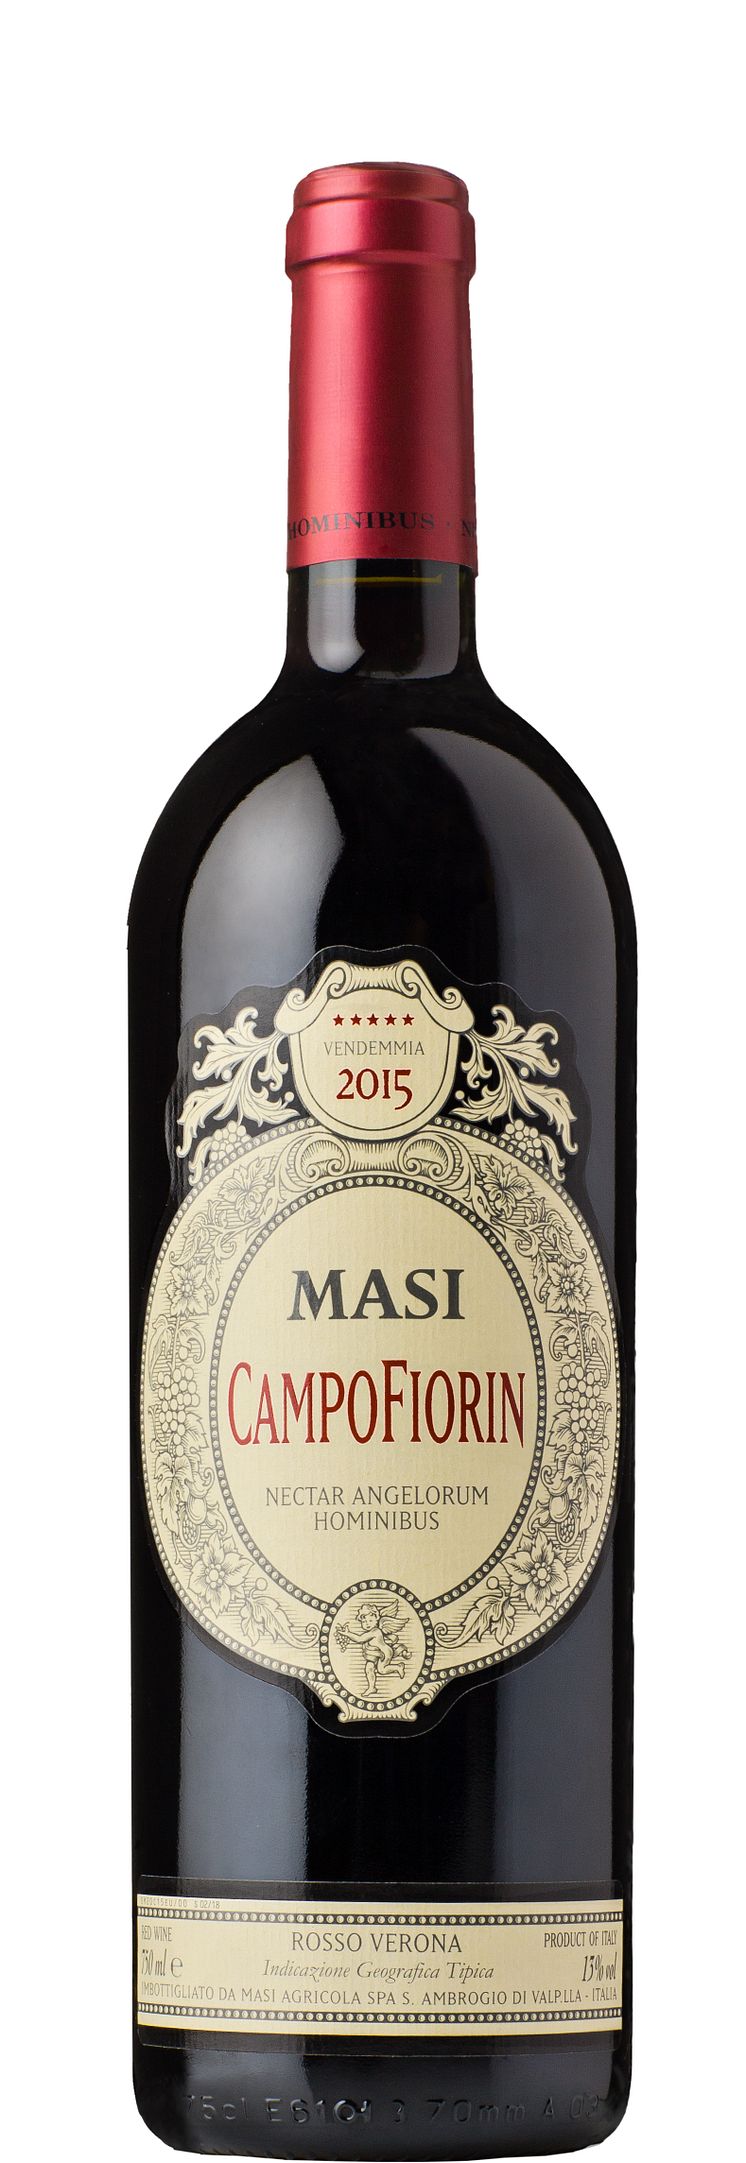 Masi Campofiorin 2015